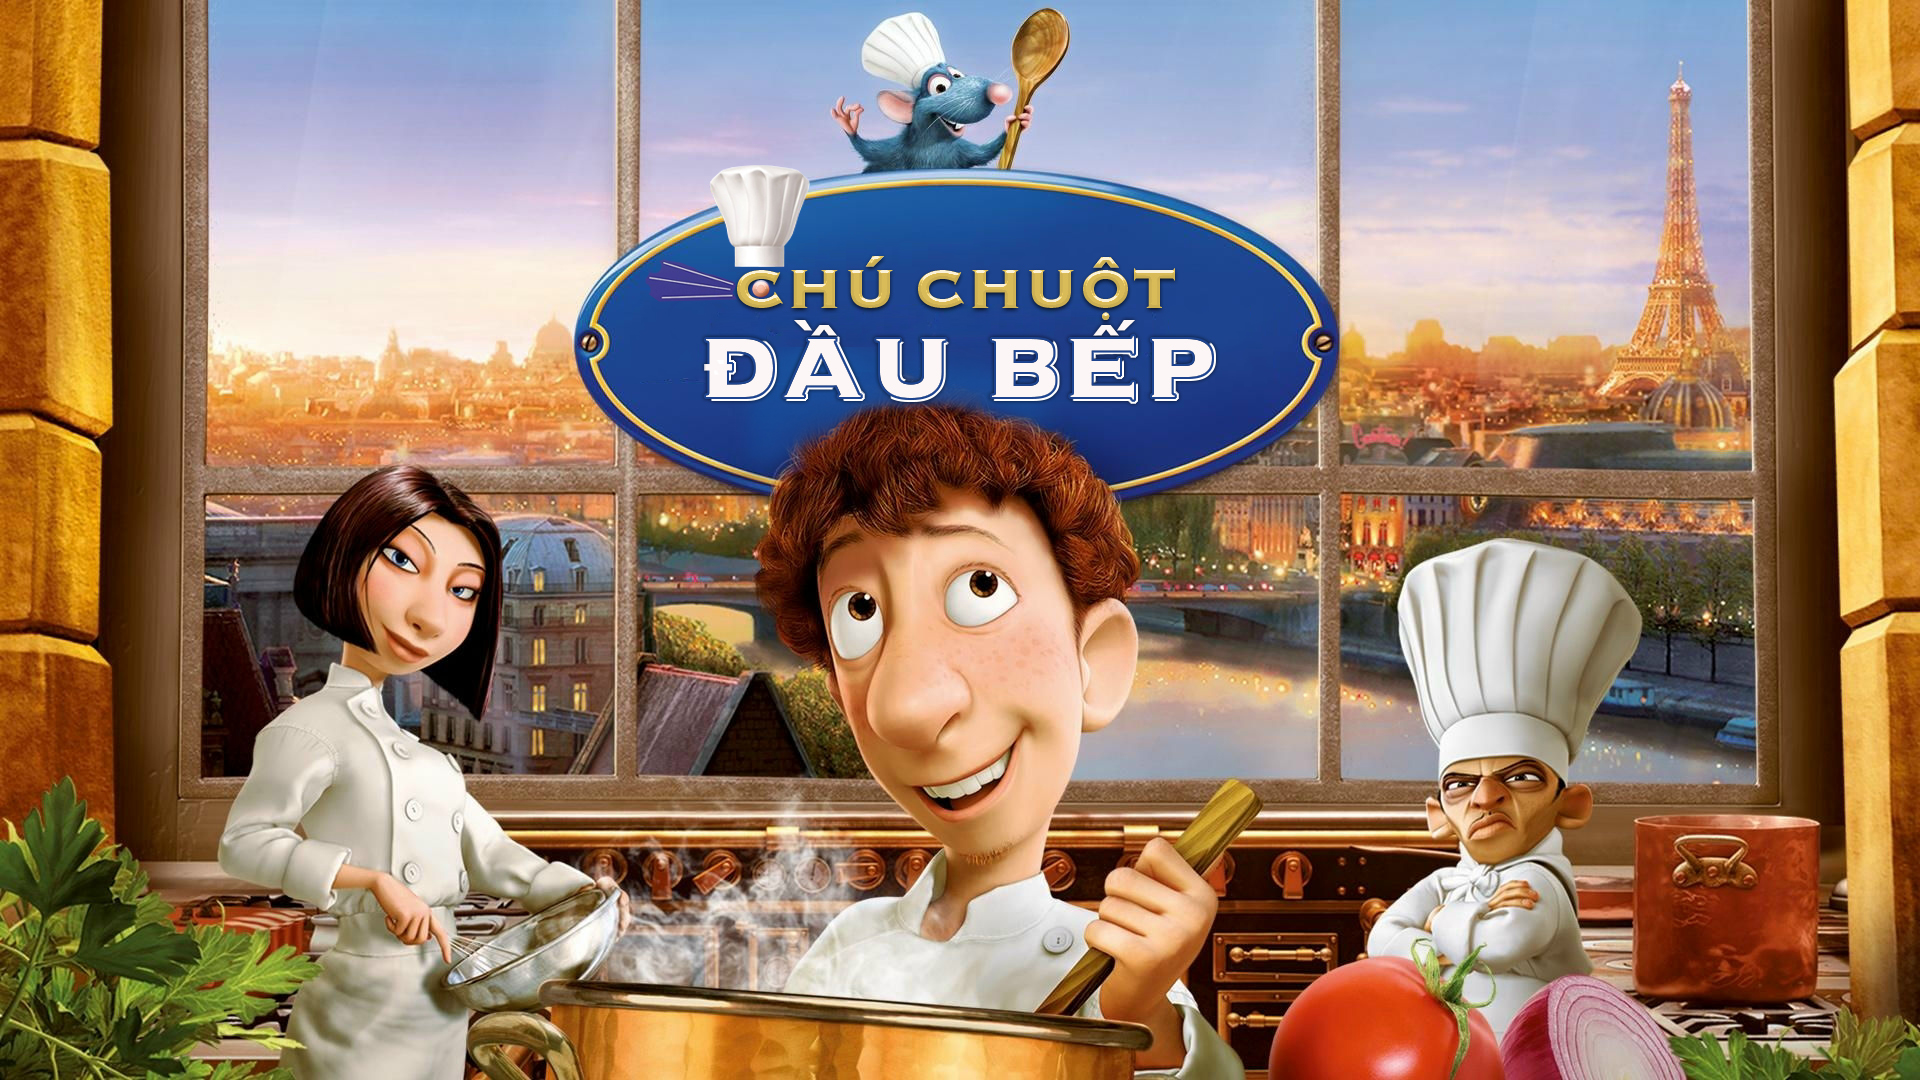 Chuột đầu bếp – Ratatouille - Phim điện ảnh hoạt hình